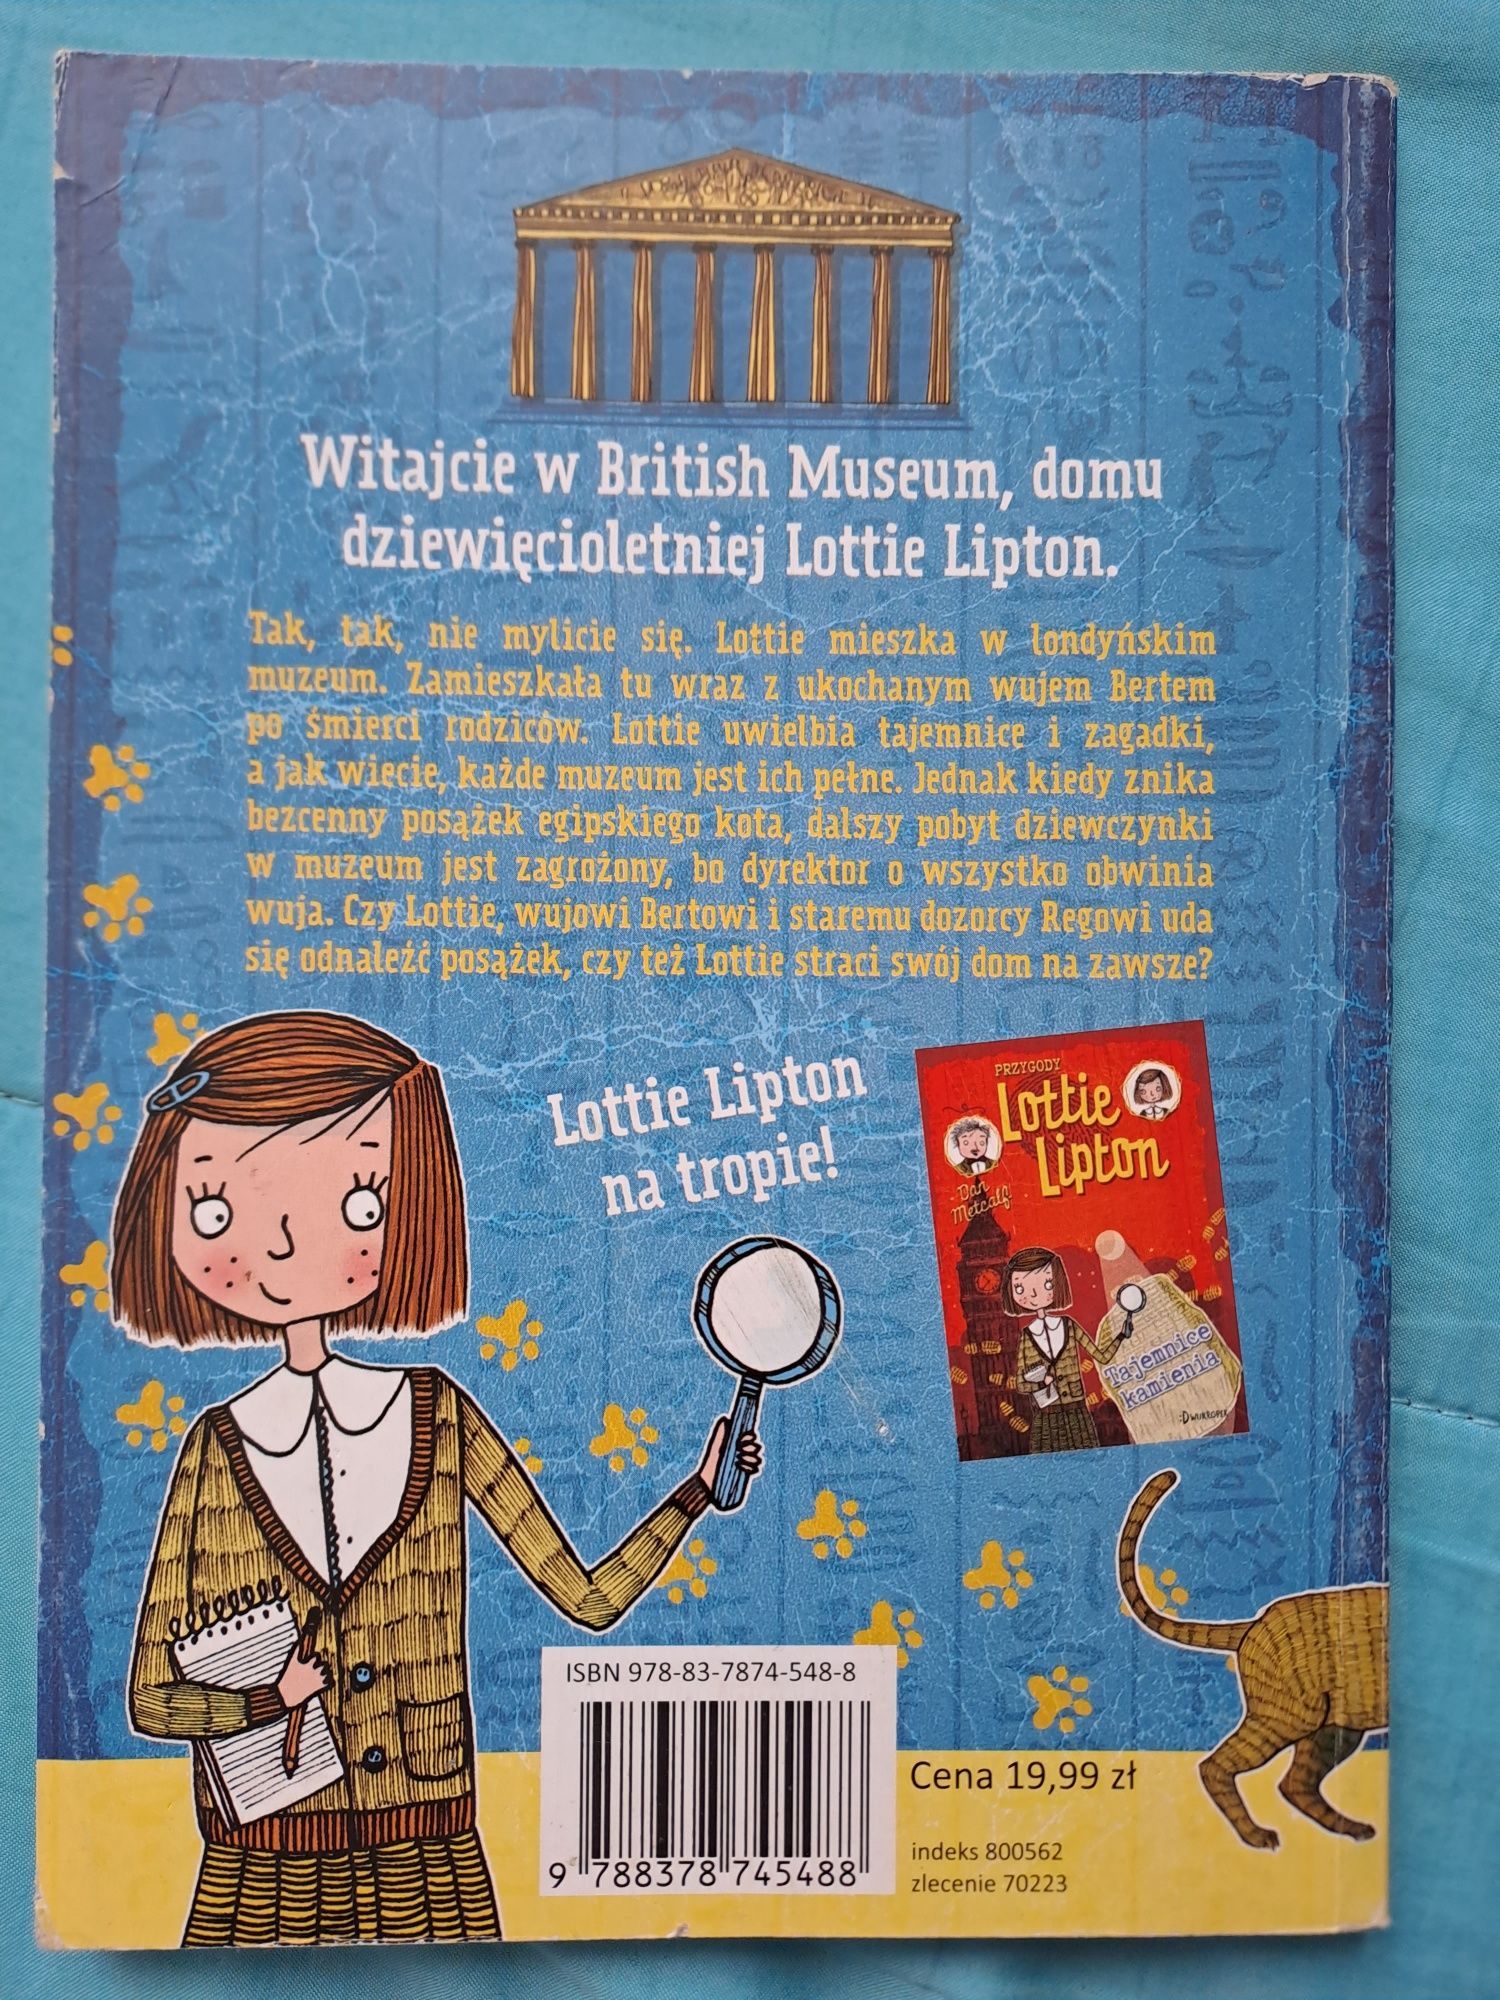 "Przygody Lottie Lipton - klątwa egipskiego kota" - Dan Metcalf